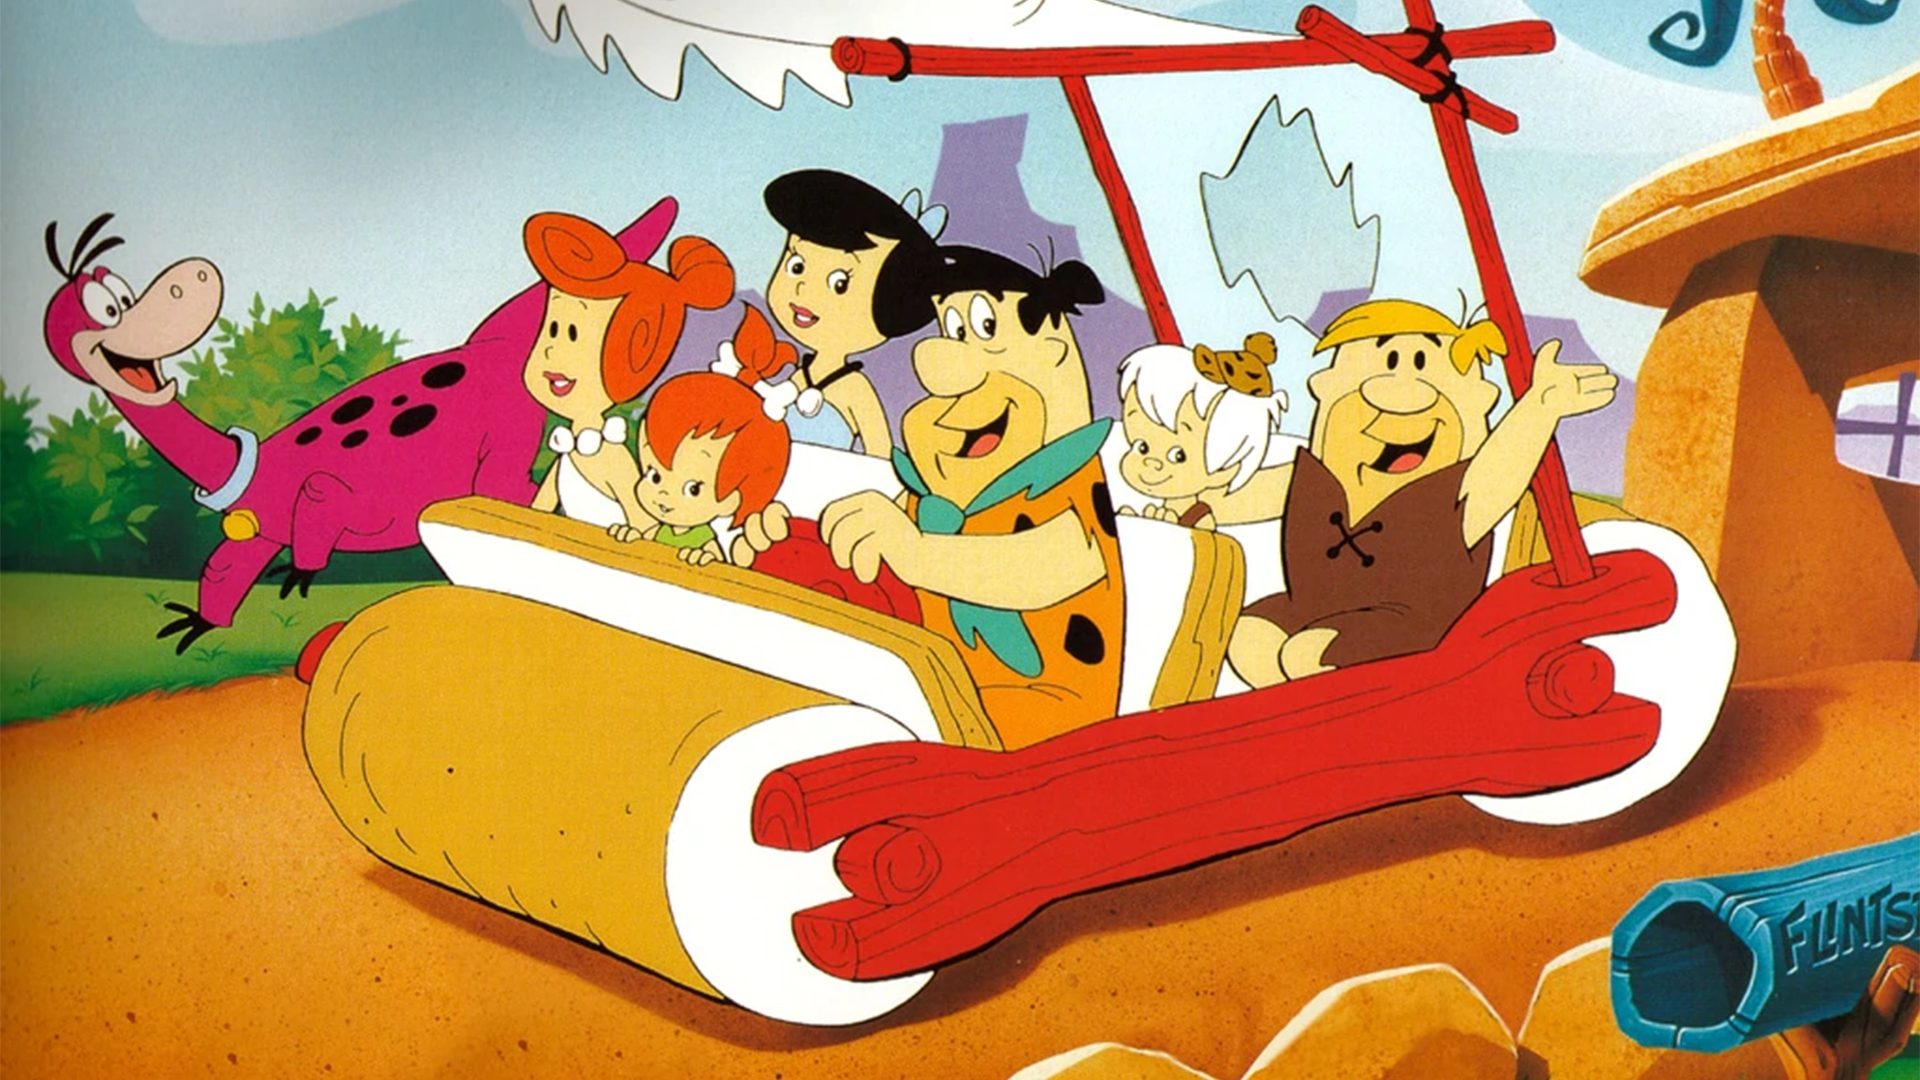 ‘The Flintstones’ animated sequel ‘Bedrock’ is in the works